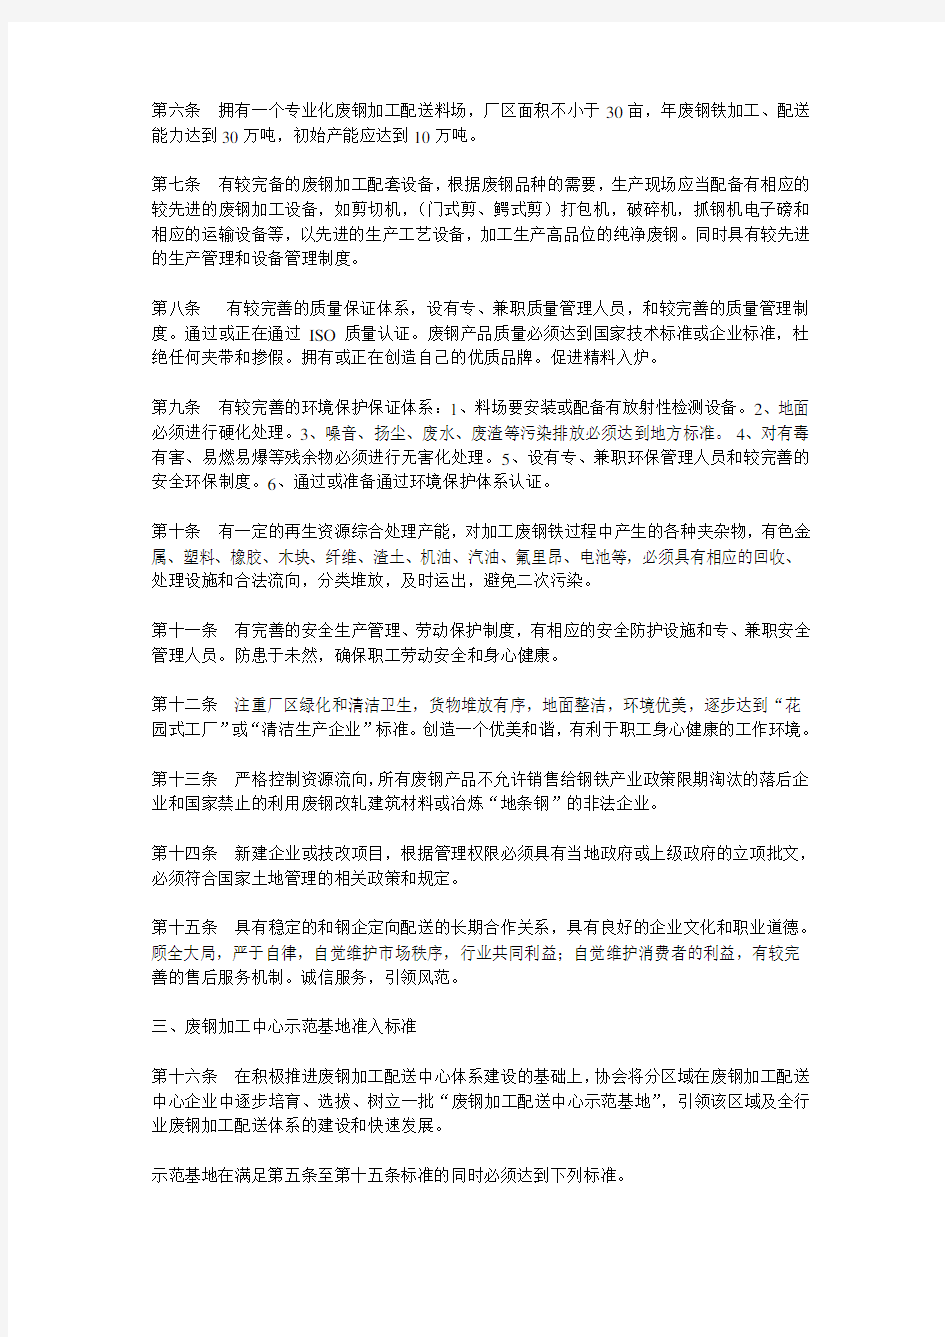 中国废钢铁应用协会废钢铁加工配送中心、示范基地准入标准及管理办法